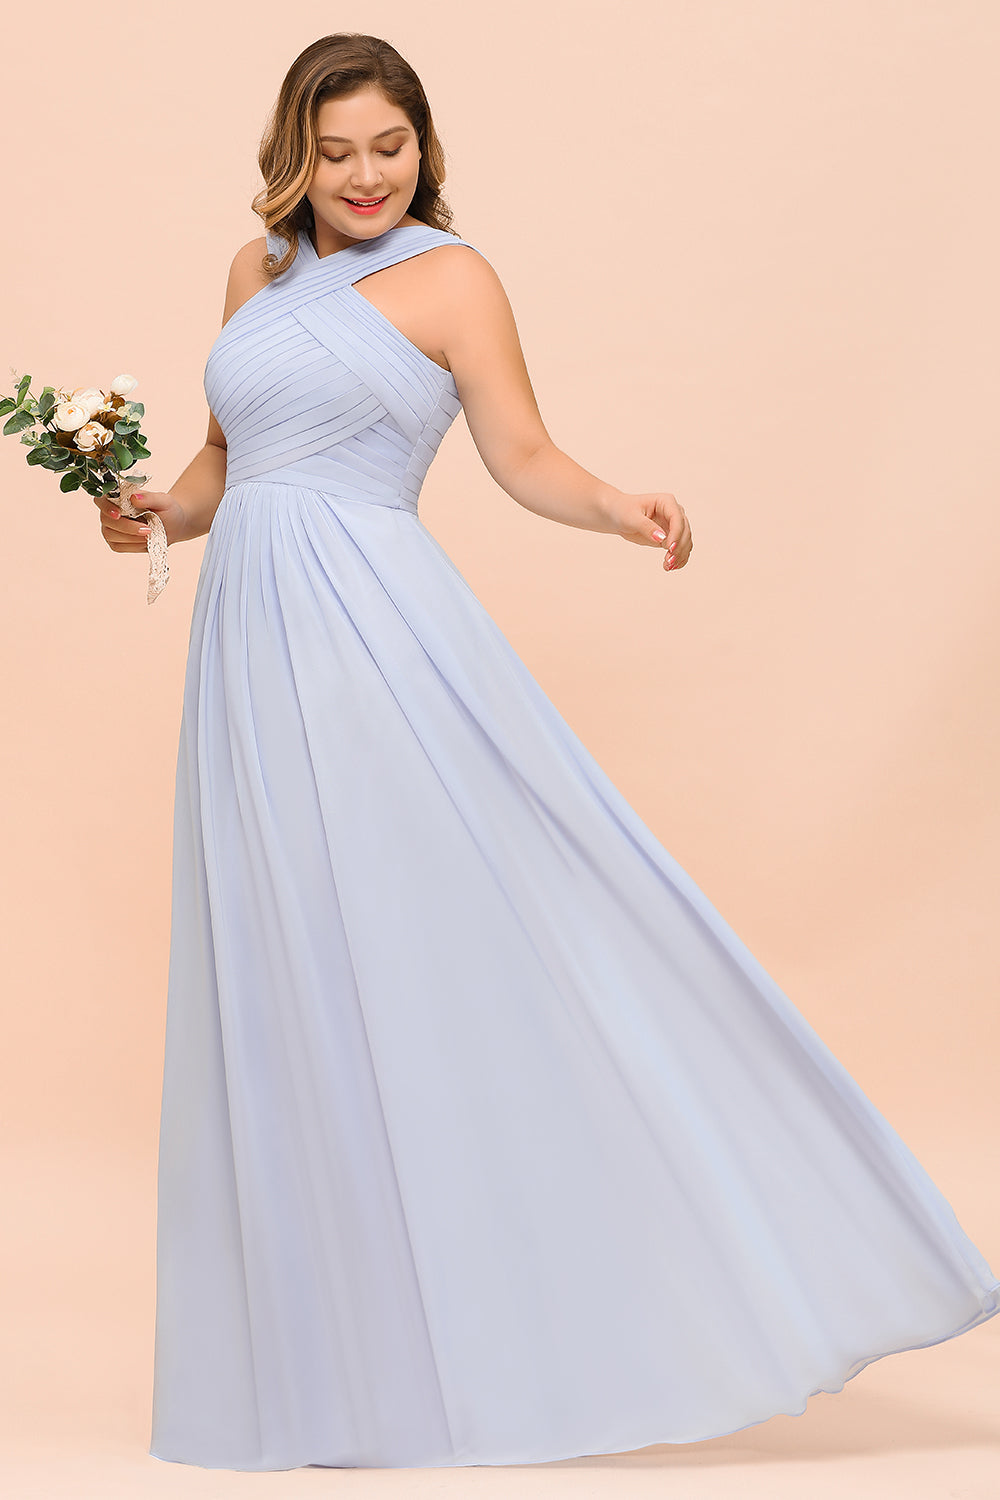 Finden Sie Lavender Brautjungfernkleider Große Größe online bei babyonlinedress.de. Chiffon Kleider Lang Günstig für Sie zur Hochzeit gehen.